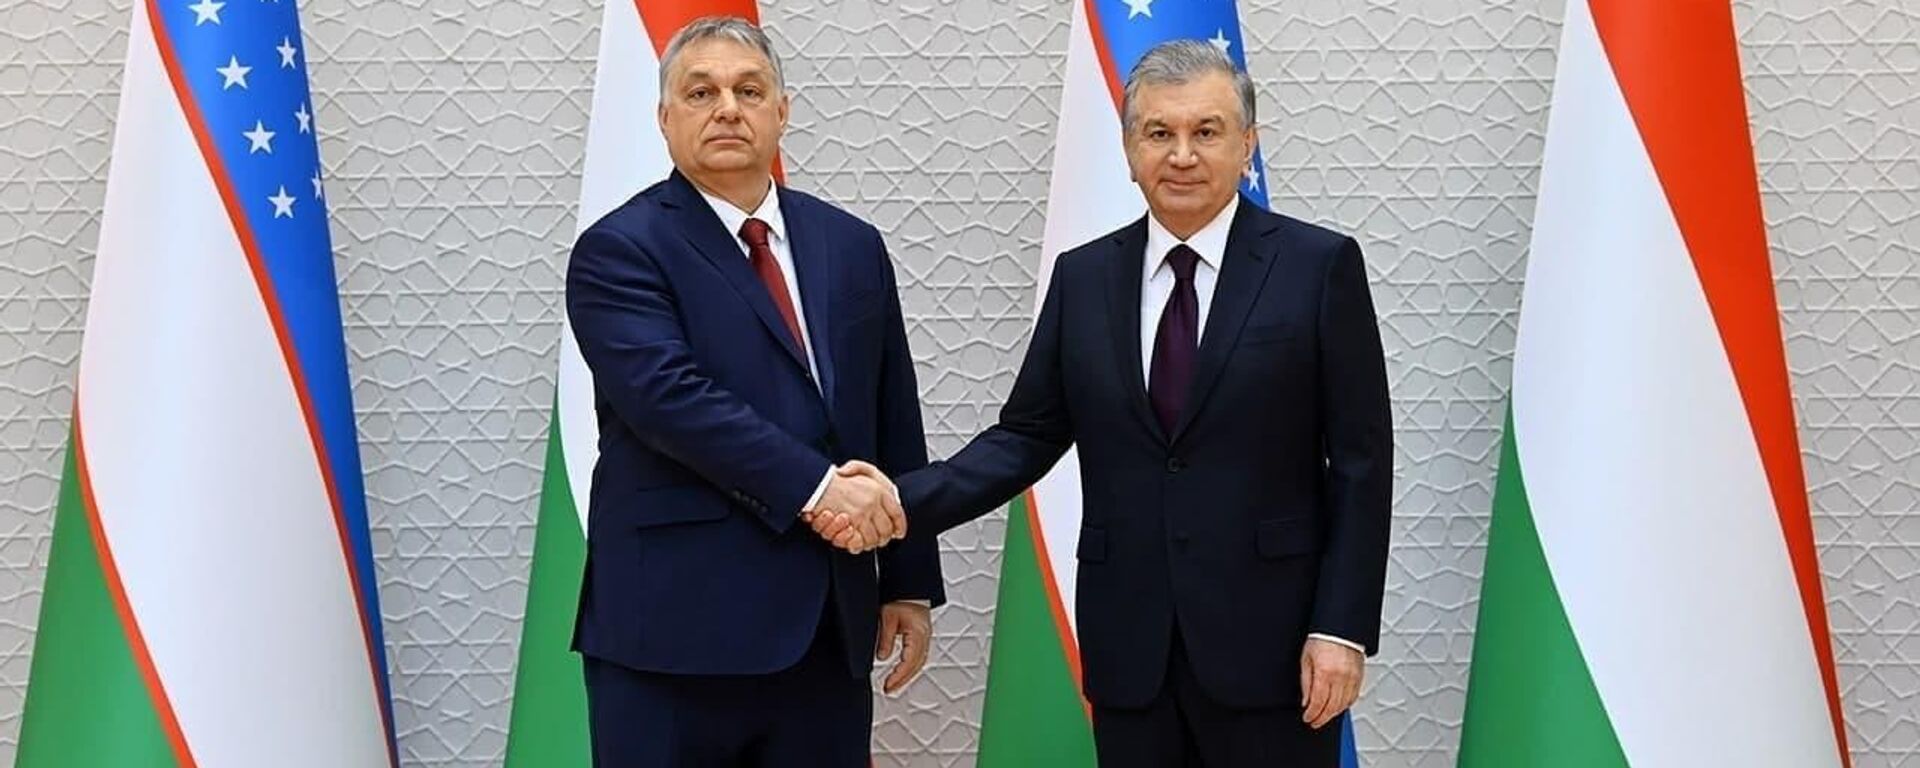 Президент Узбекистана Шавкат Мирзиёев (справа) и премьер-министр Венгрии Виктор Орбан - Sputnik Узбекистан, 1920, 30.03.2021